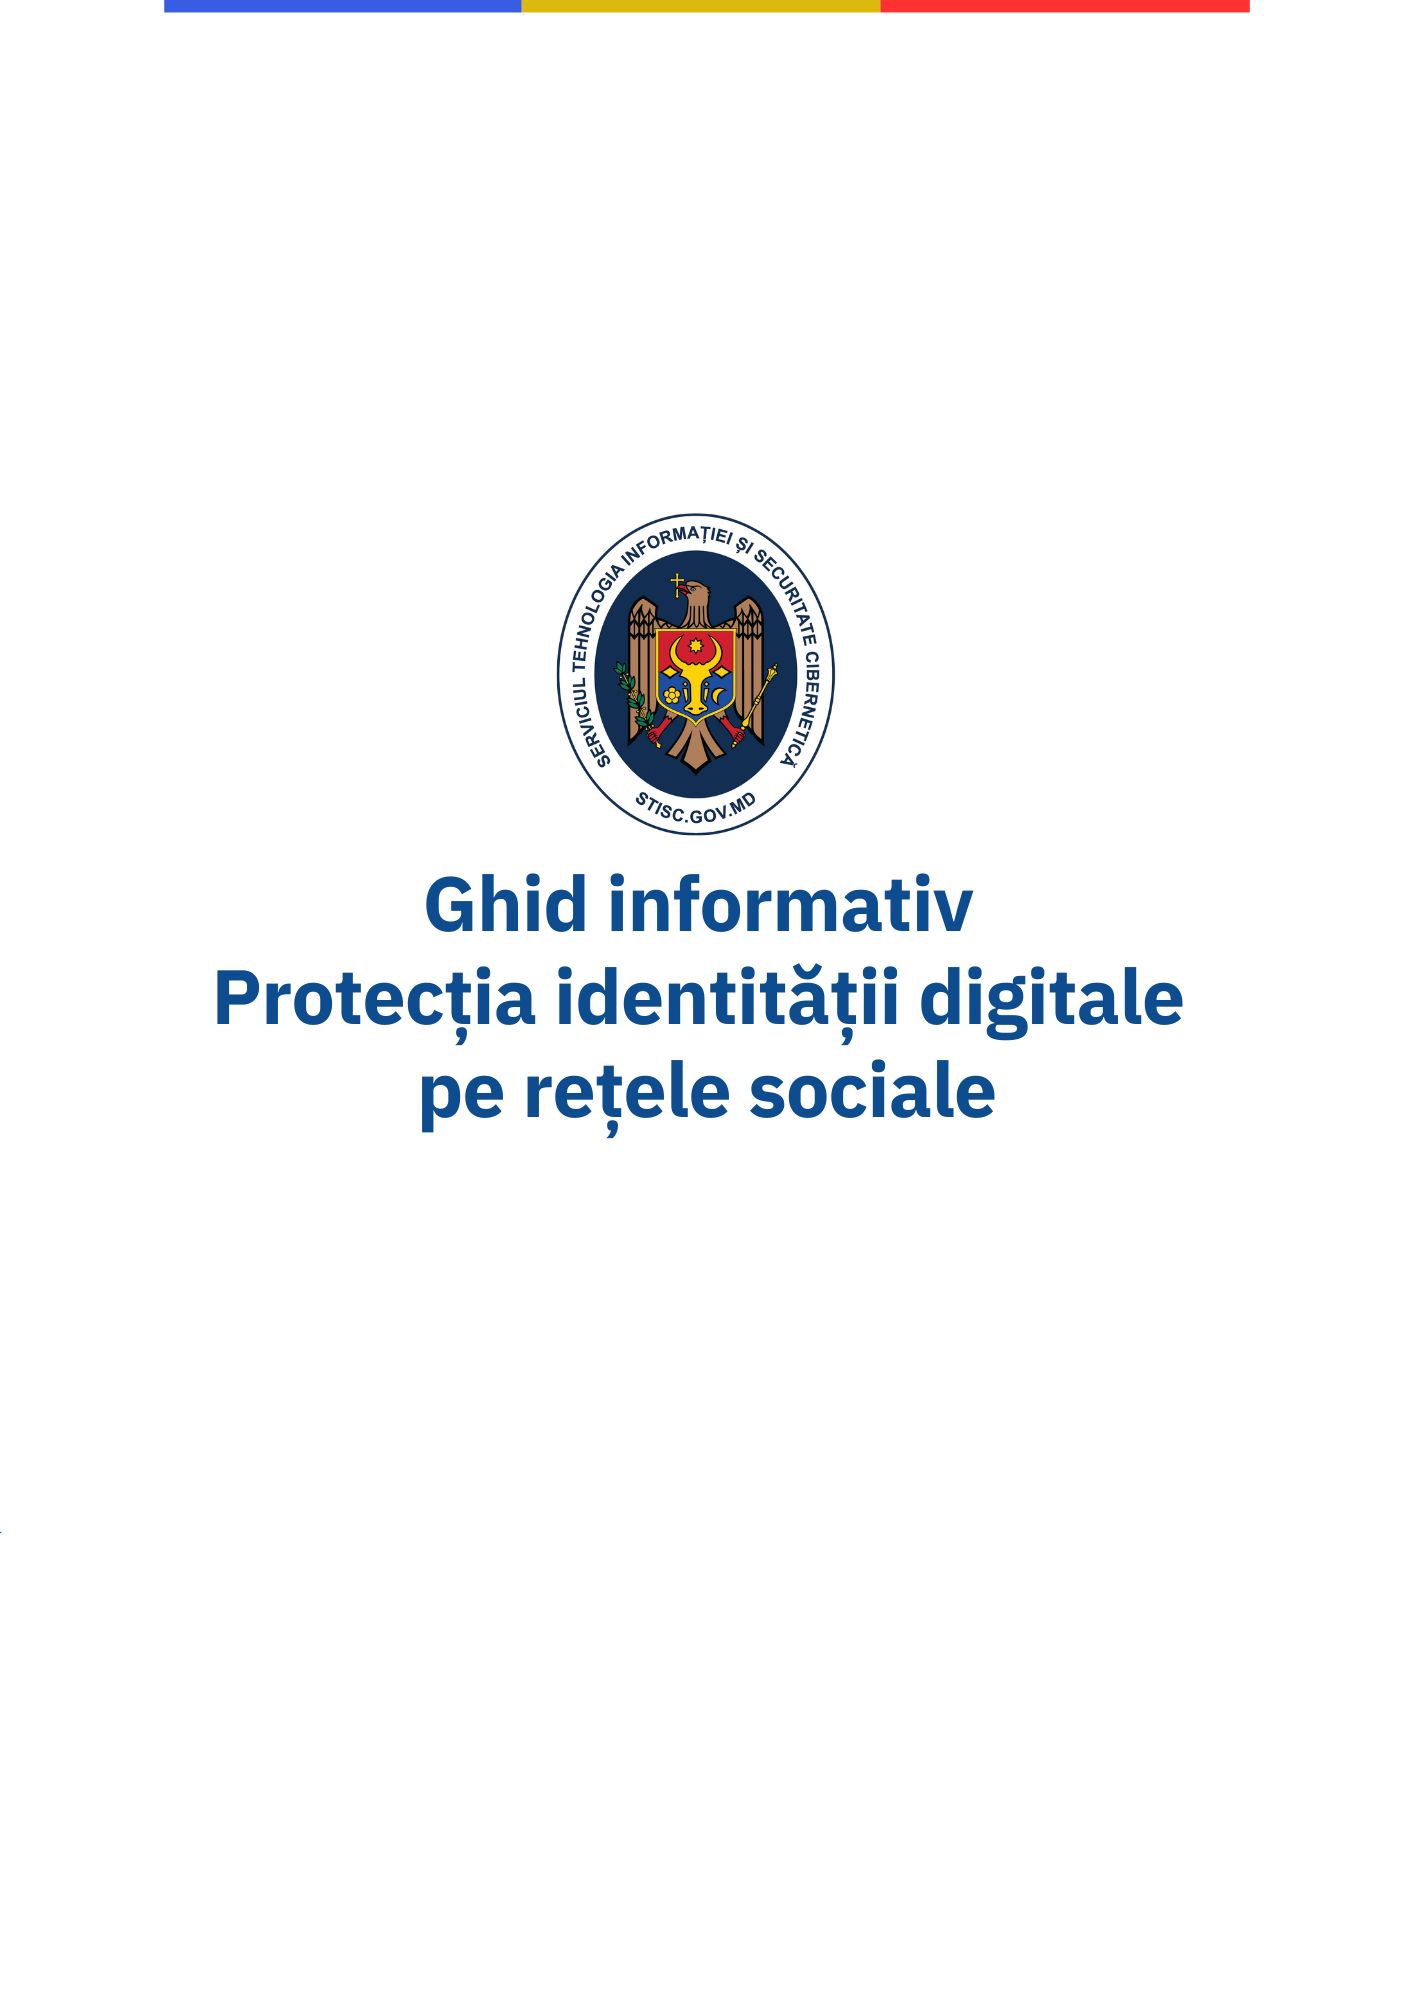 ghid-informativ-despre-protecția-identității-digitale-pe-rețele-sociale